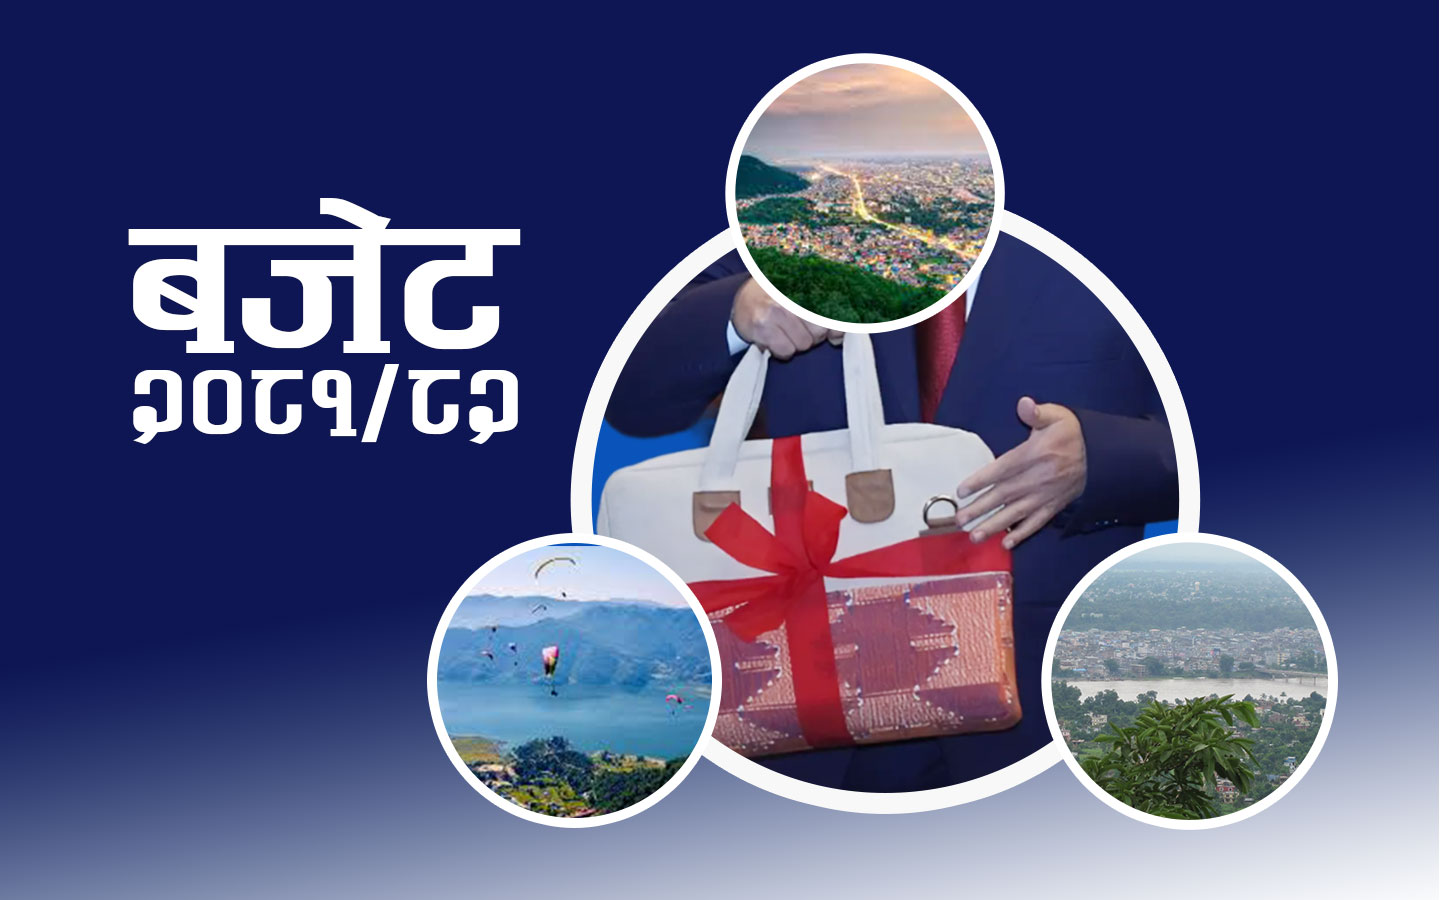 बुटवल-भरतपुर-पोखरालाई जोडेर गण्डकी आर्थिक त्रिभूज परियोजना सञ्चालन गर्ने घोषणा